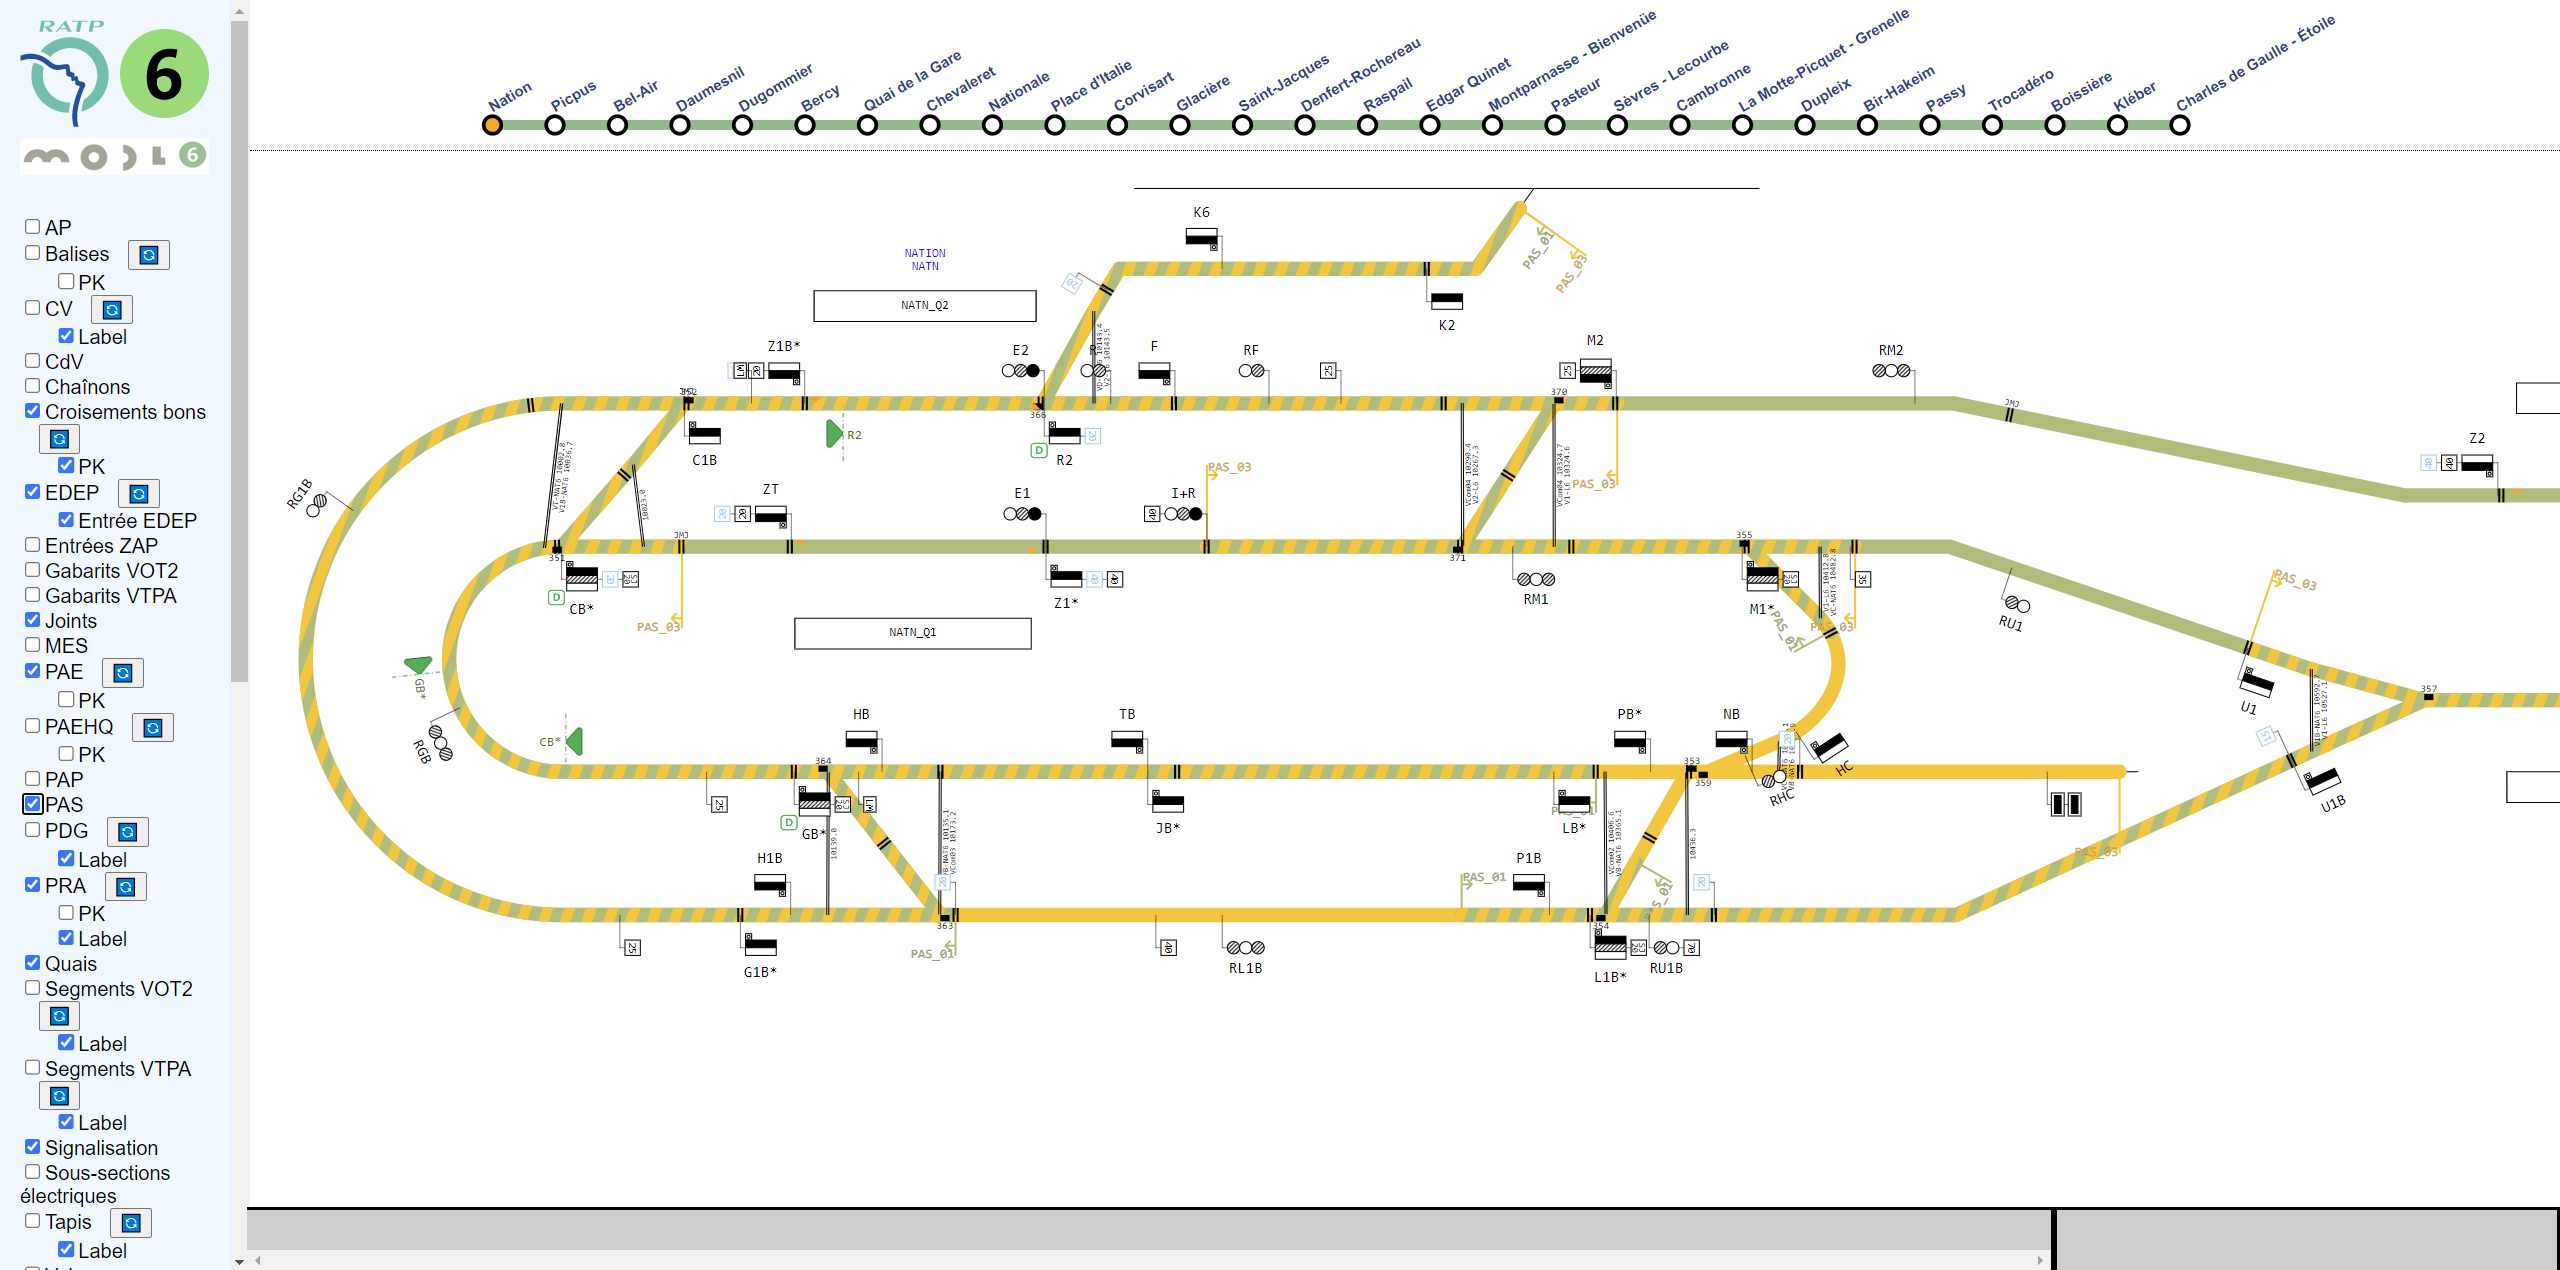 Plan de la ligne 6 du métro de Paris réalisé par les outils Systerel.